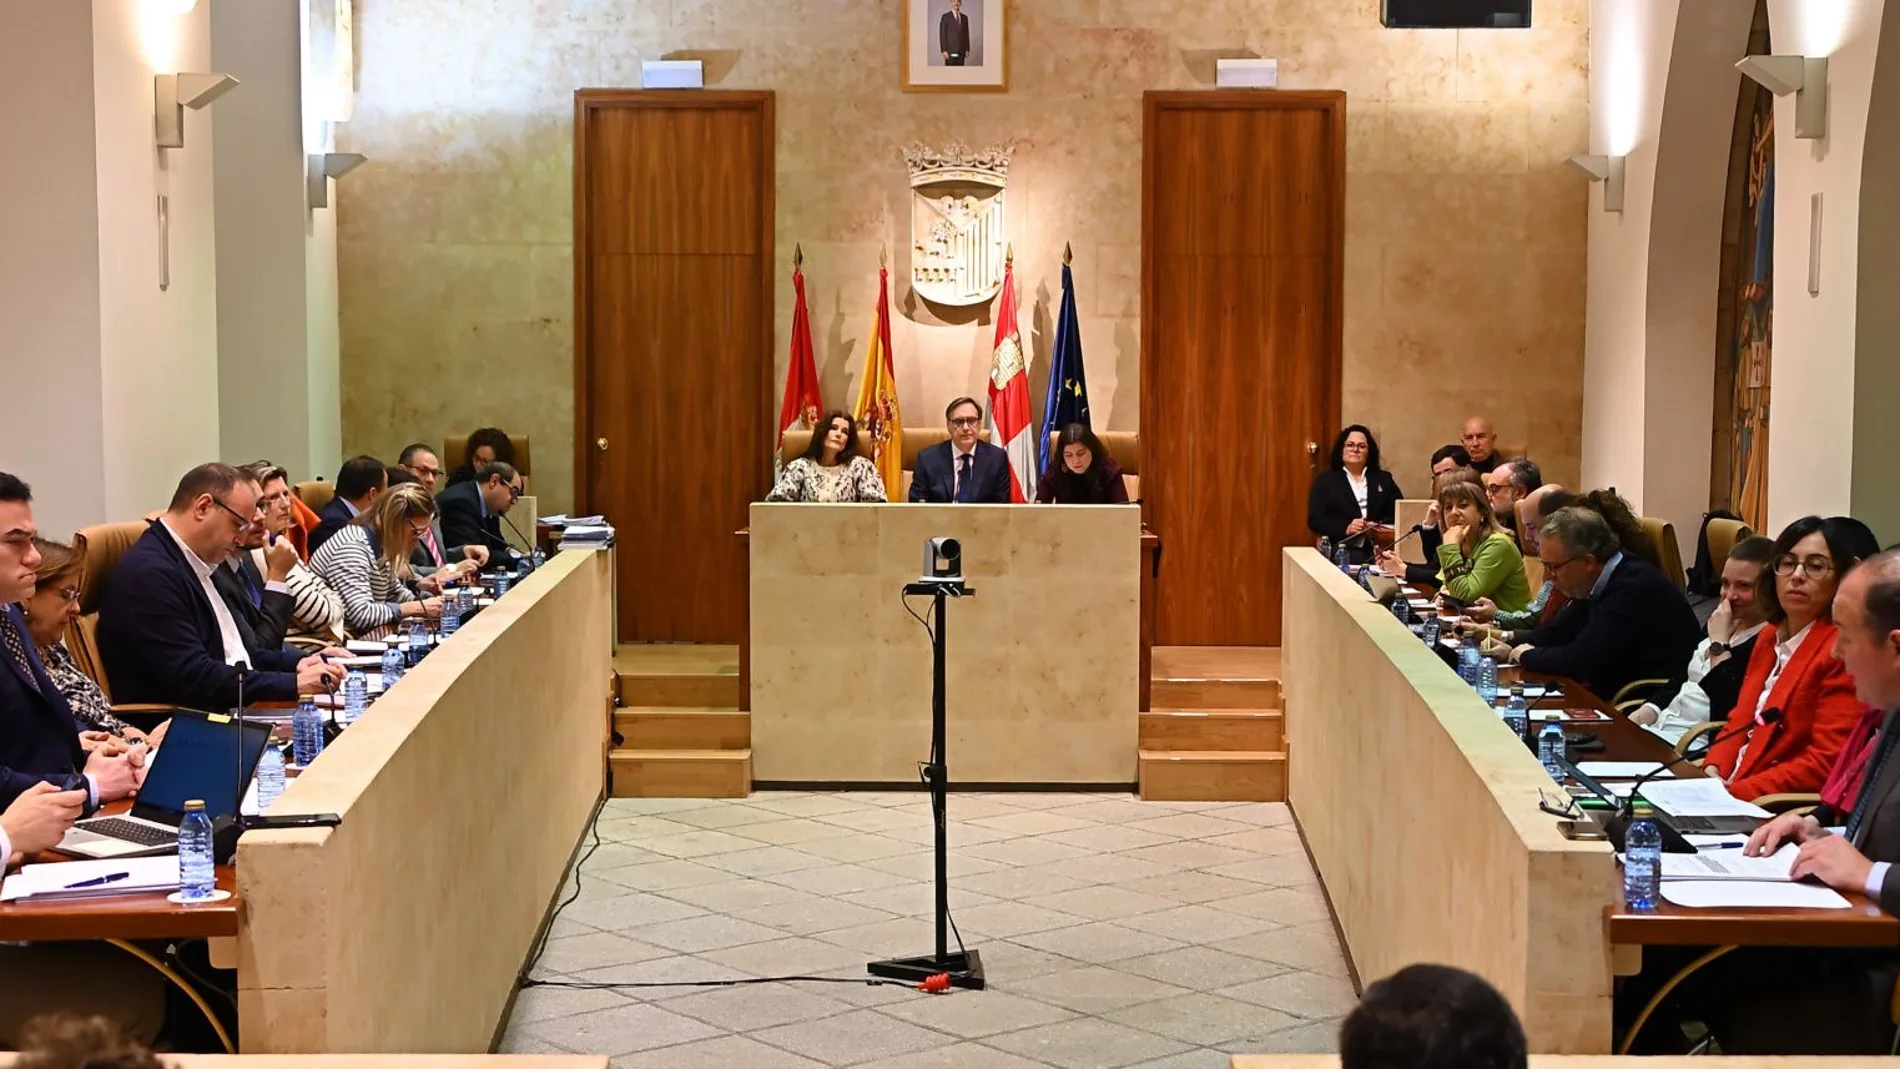 El alcalde de Salamanca, Carlos García Carbayo, preside el Pleno Extraordinario de Presupuestos